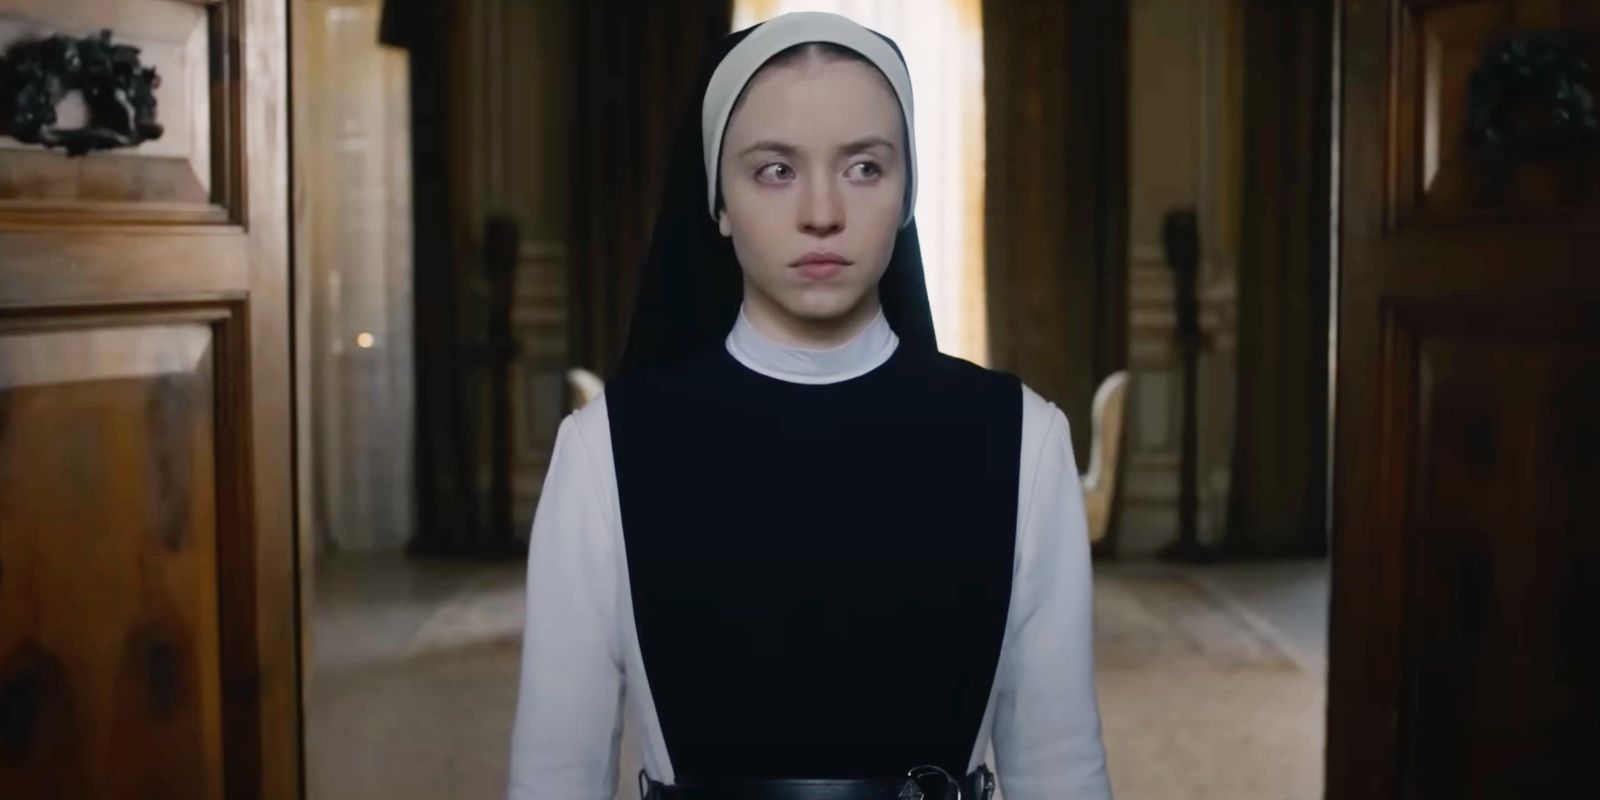 Primeras reacciones inmaculadas: película de terror de Sydney Sweeney elogiada por su terror religioso "sangriento y desquiciado"